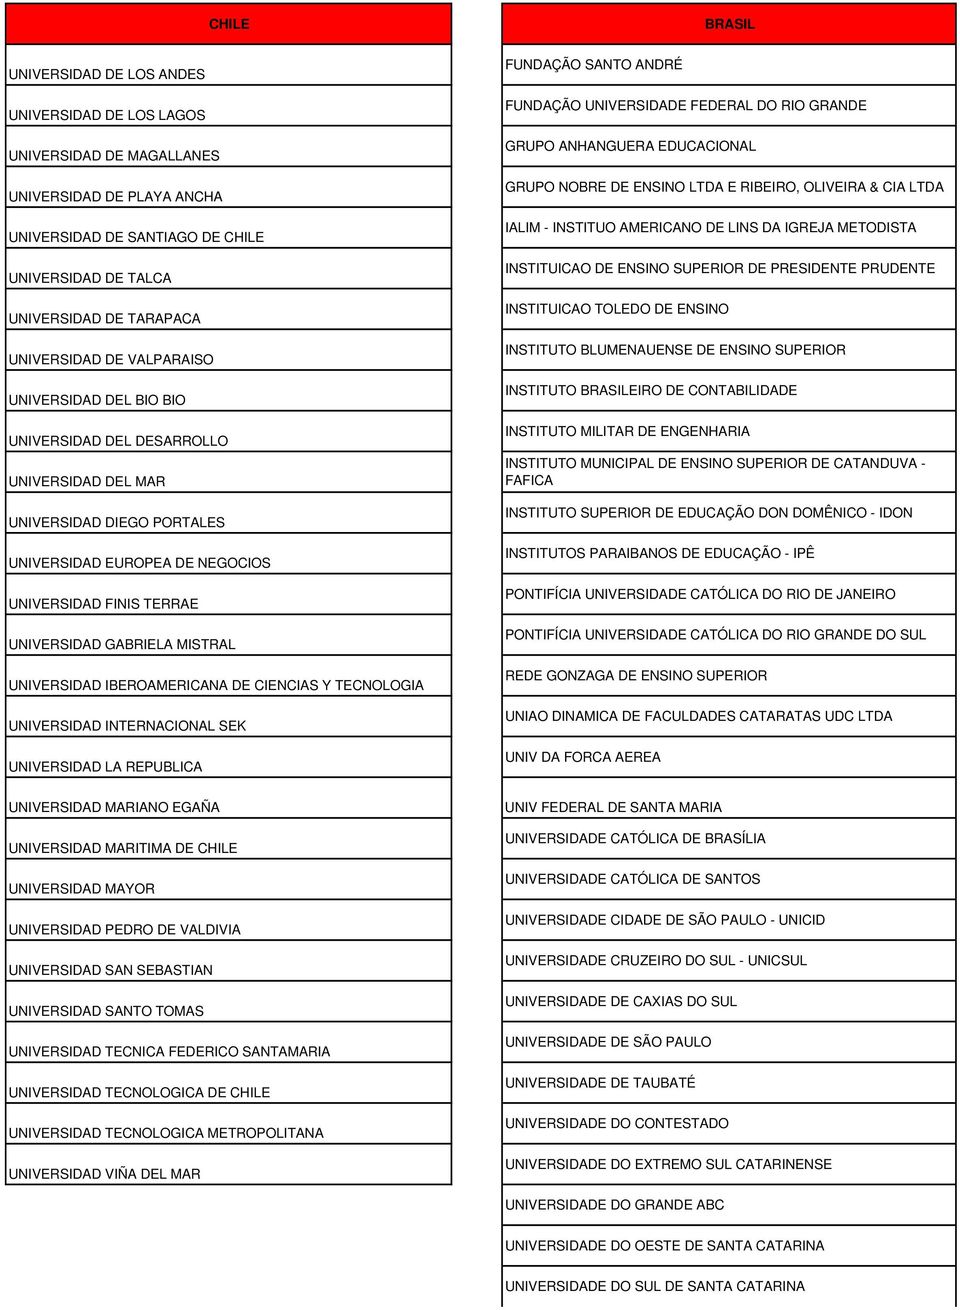 UNIVERSIDAD IBEROAMERICANA DE CIENCIAS Y TECNOLOGIA UNIVERSIDAD INTERNACIONAL SEK UNIVERSIDAD LA REPUBLICA FUNDAÇÃO SANTO ANDRÉ FUNDAÇÃO UNIVERSIDADE FEDERAL DO RIO GRANDE GRUPO ANHANGUERA